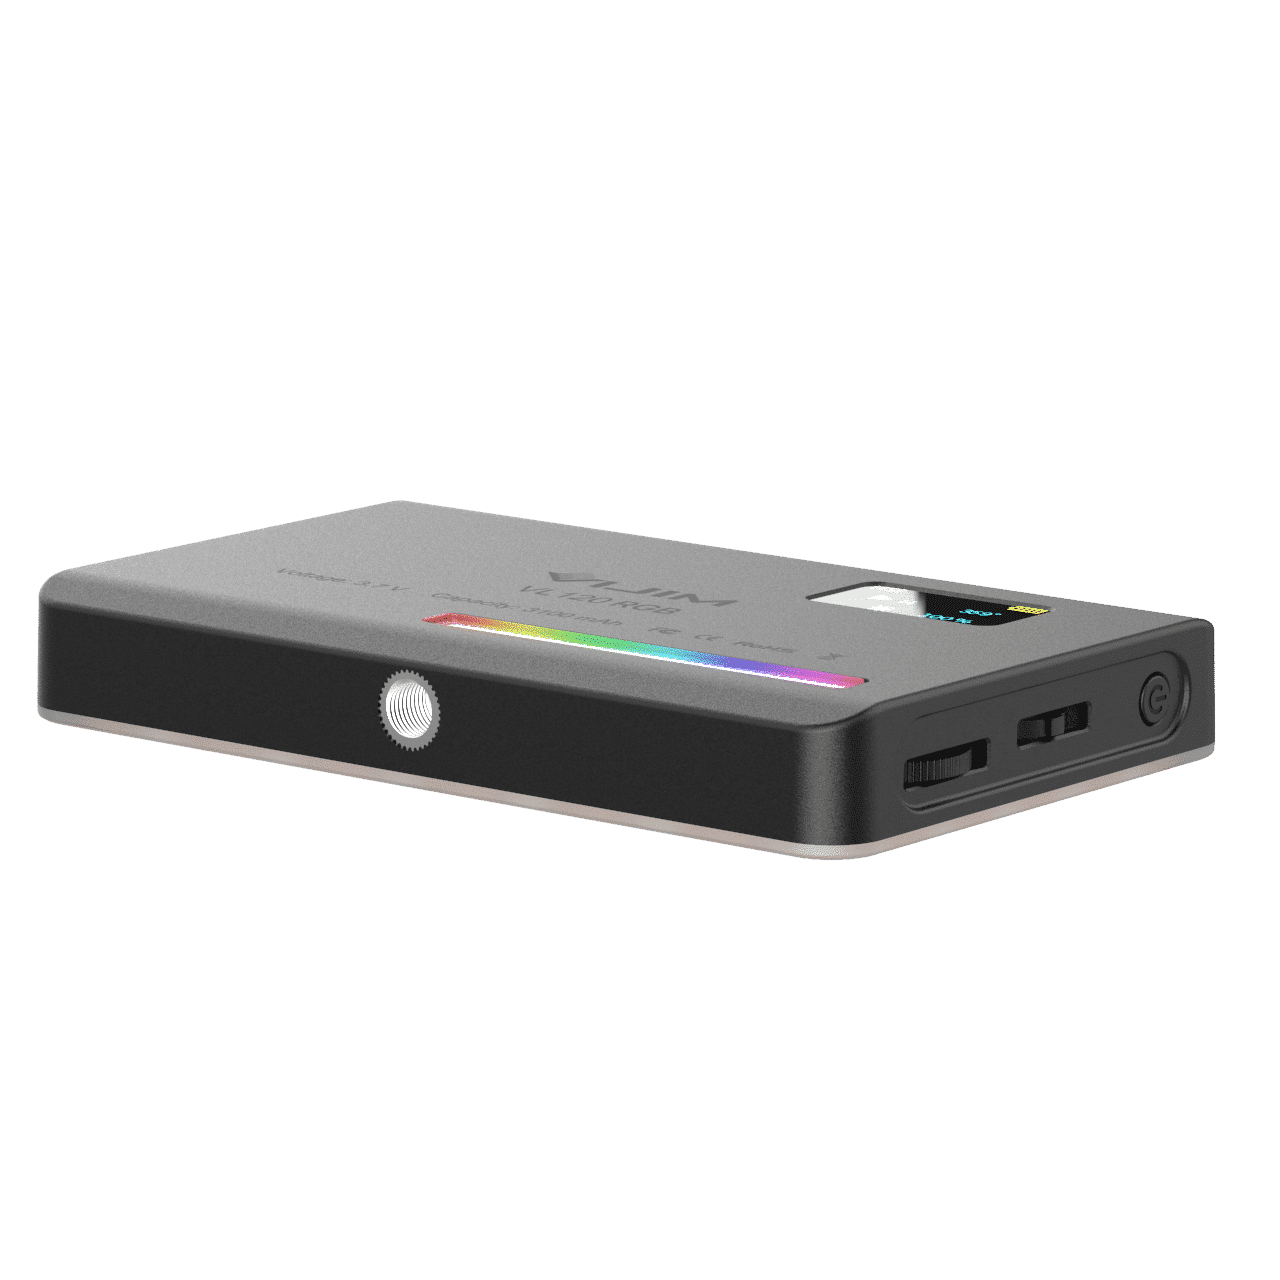 Ulanzi VL120 RGB Multi Color LED-videolamp